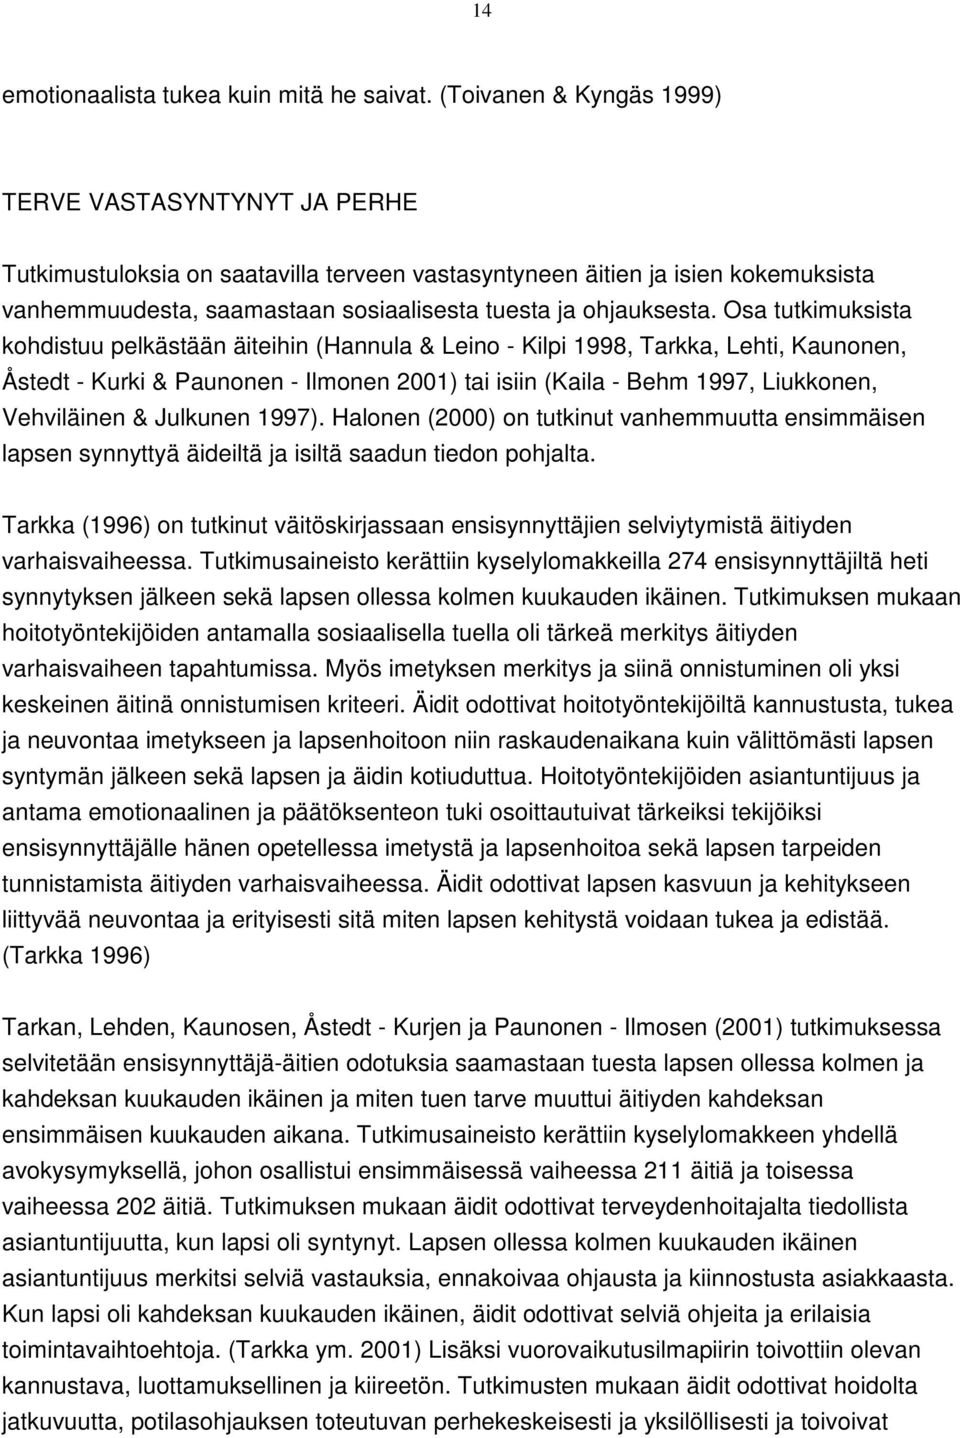 Osa tutkimuksista kohdistuu pelkästään äiteihin (Hannula & Leino - Kilpi 1998, Tarkka, Lehti, Kaunonen, Åstedt - Kurki & Paunonen - Ilmonen 2001) tai isiin (Kaila - Behm 1997, Liukkonen, Vehviläinen